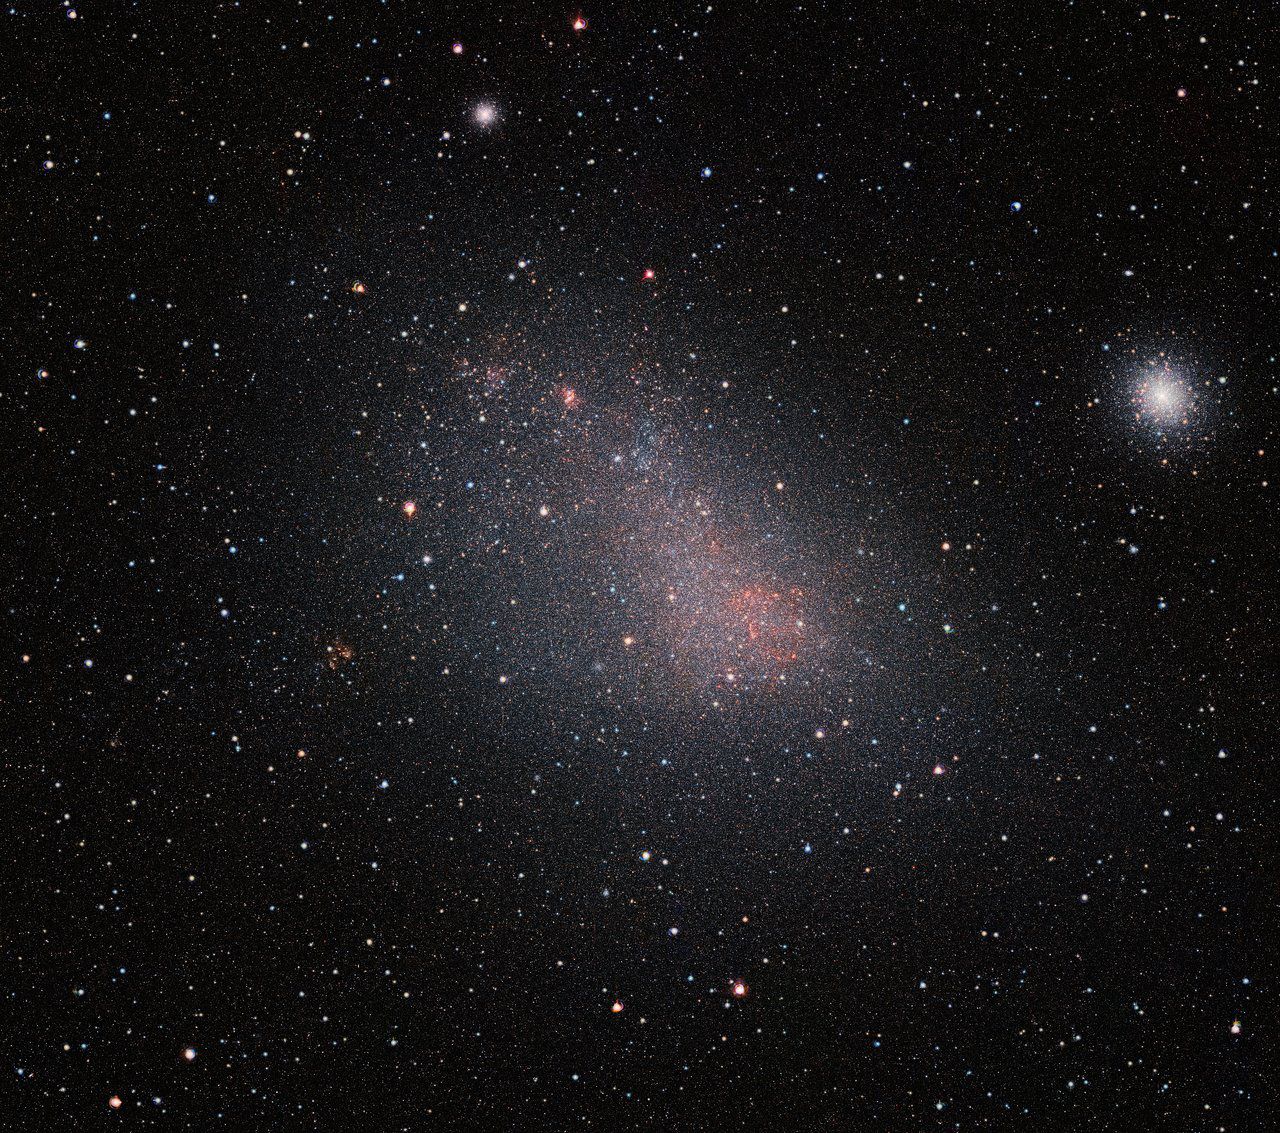 Обсерватория VISTA всматривается в Малое Магелланово Облако сквозь слой пыли